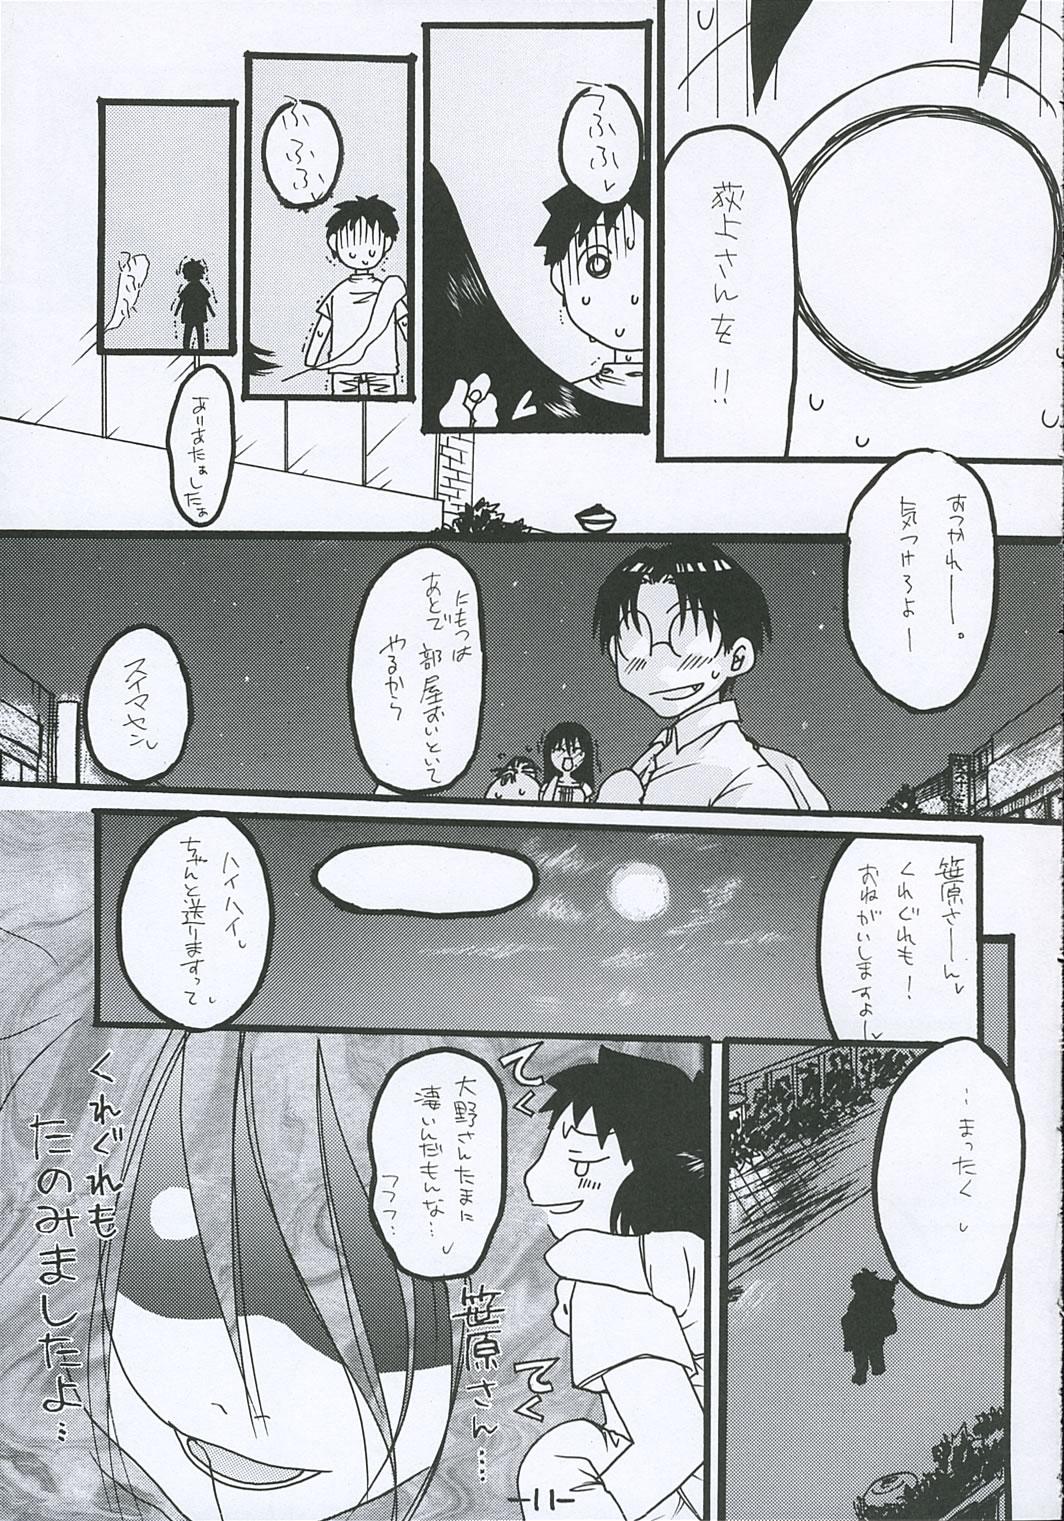 Coed [Tentai→Kansoku] O-TO-GA-ME Heart (Genshiken) - Genshiken Spy Camera - Page 10